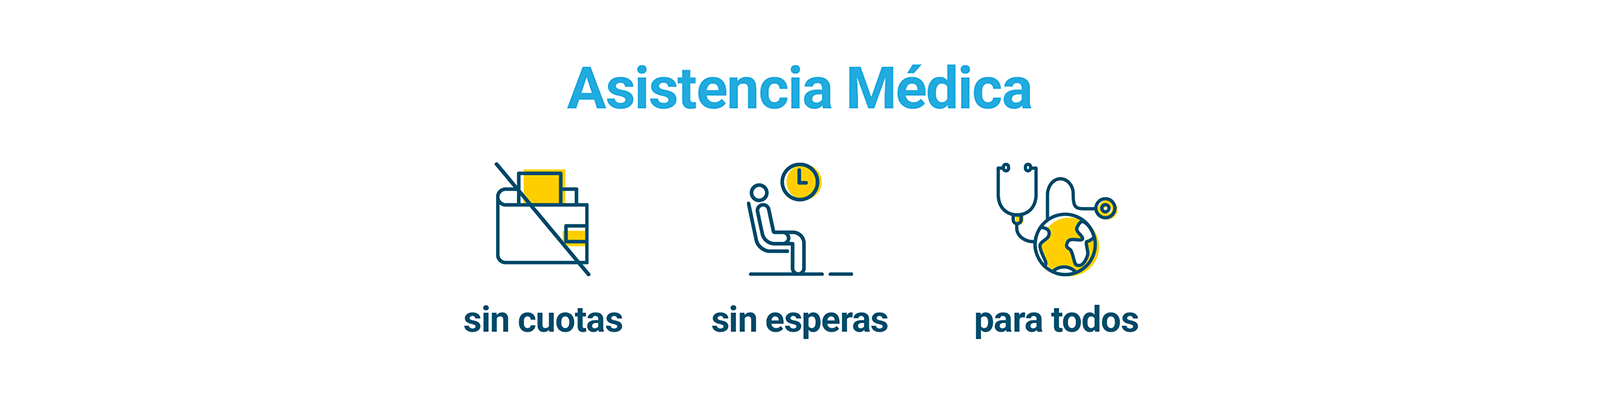 Asistencia Médica sin cuotas, sin esperas y para todos
Cuidamos de ti con más de 1500 servicios y pruebas desde sólo 8 €